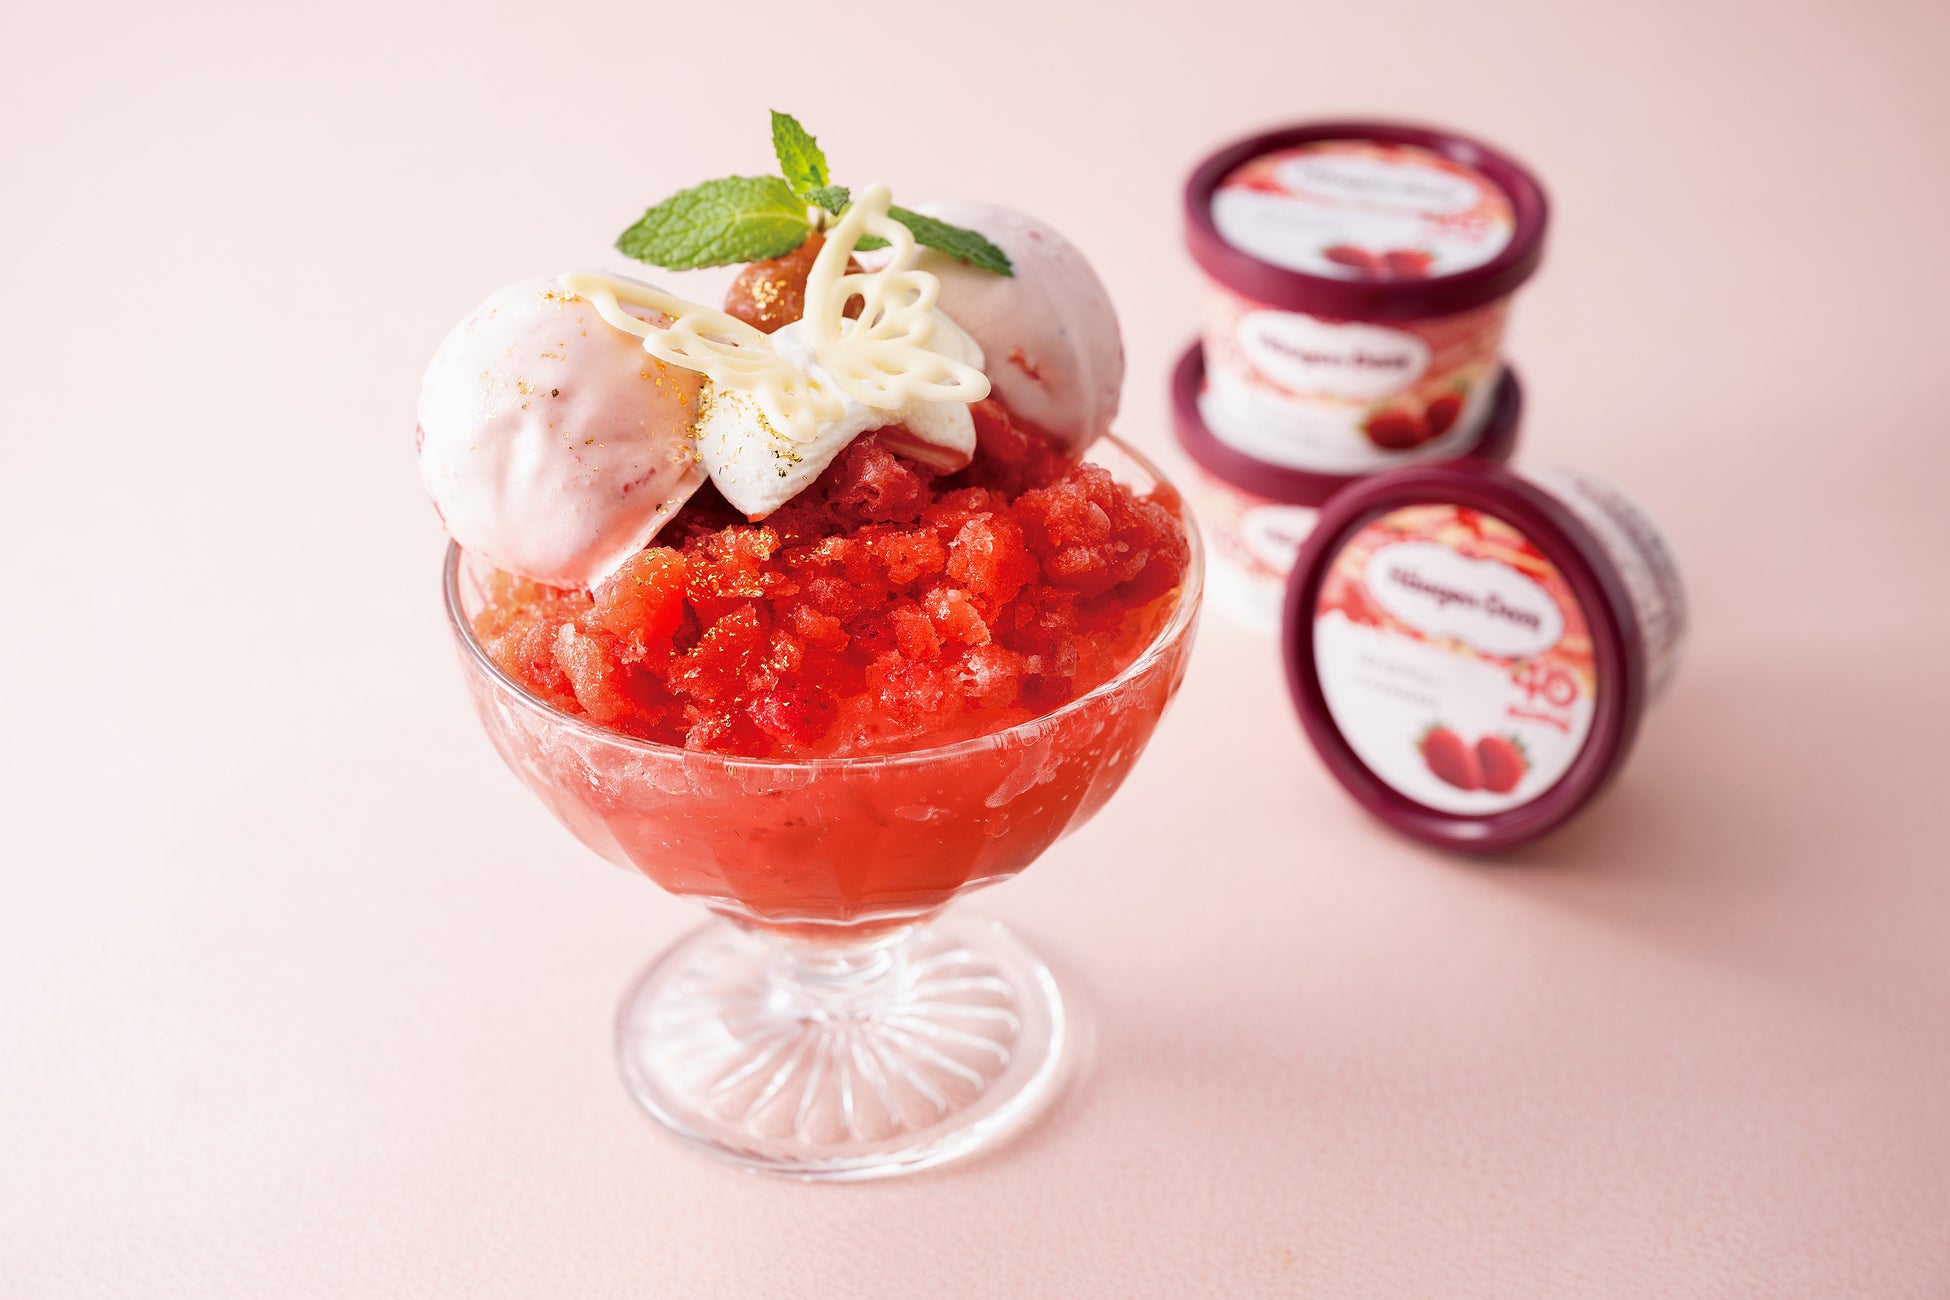 ハーゲンダッツ『ストロベリー』を使用した夏のひんやりデザートを提供　「- Cool dessert for Summer -」